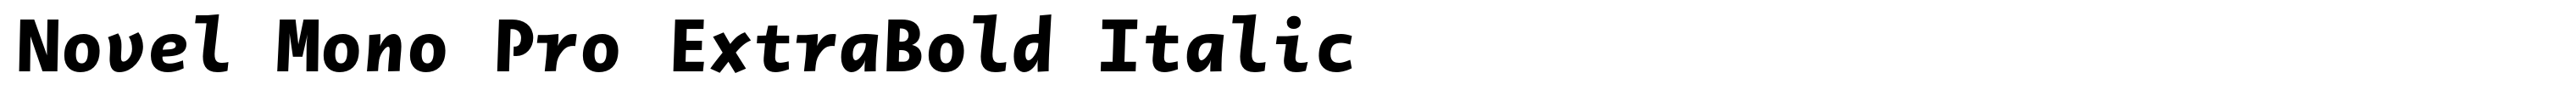 Novel Mono Pro ExtraBold Italic